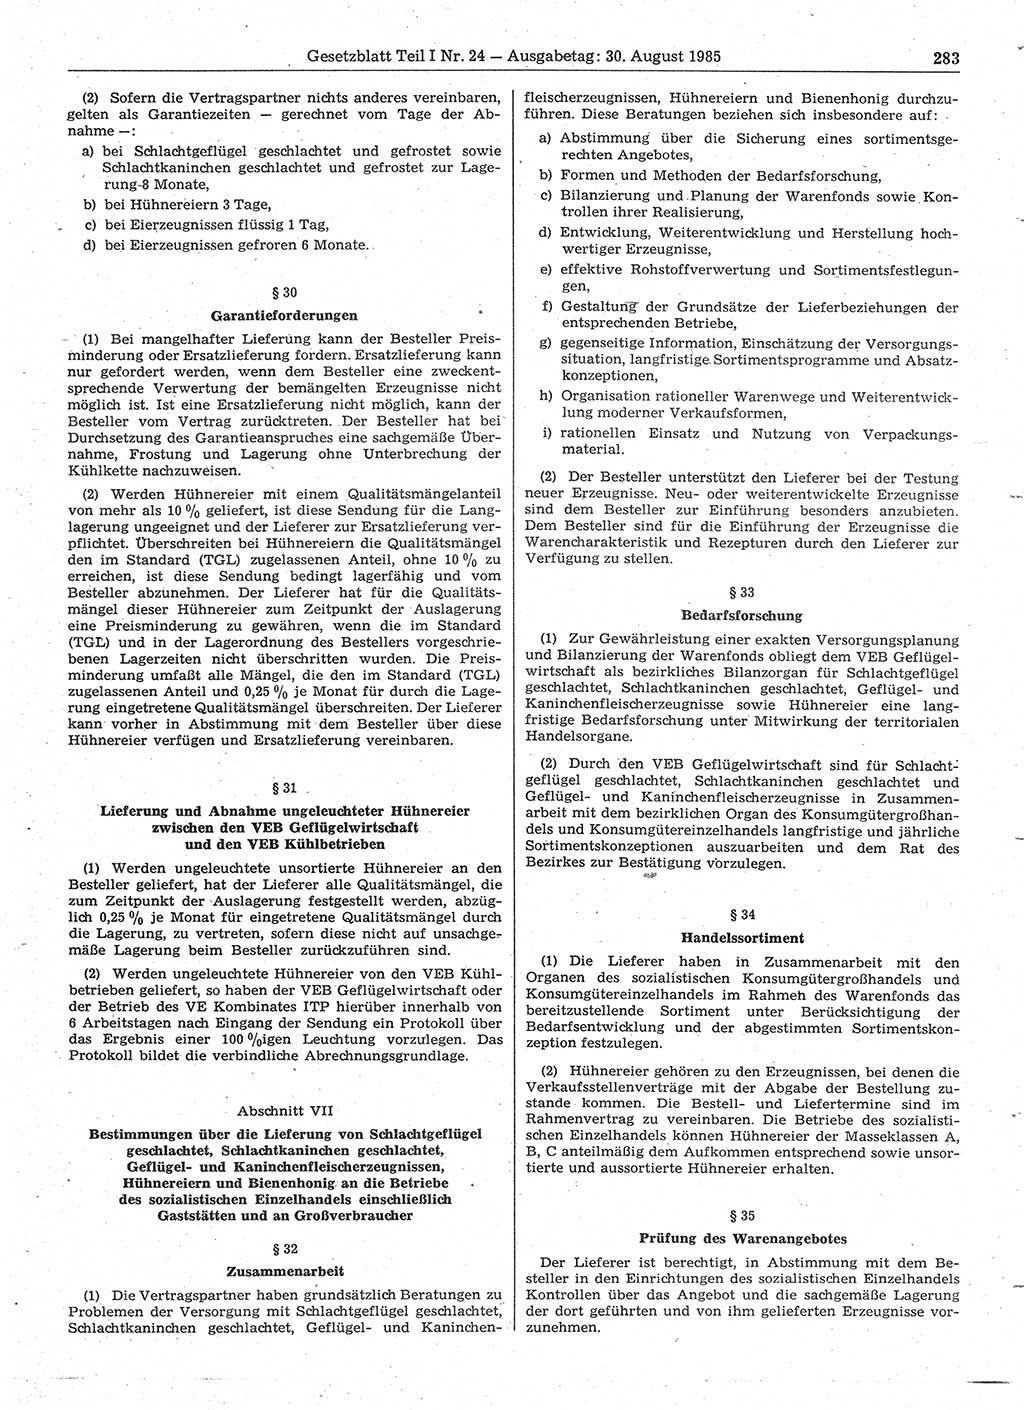 Gesetzblatt (GBl.) der Deutschen Demokratischen Republik (DDR) Teil Ⅰ 1985, Seite 283 (GBl. DDR Ⅰ 1985, S. 283)